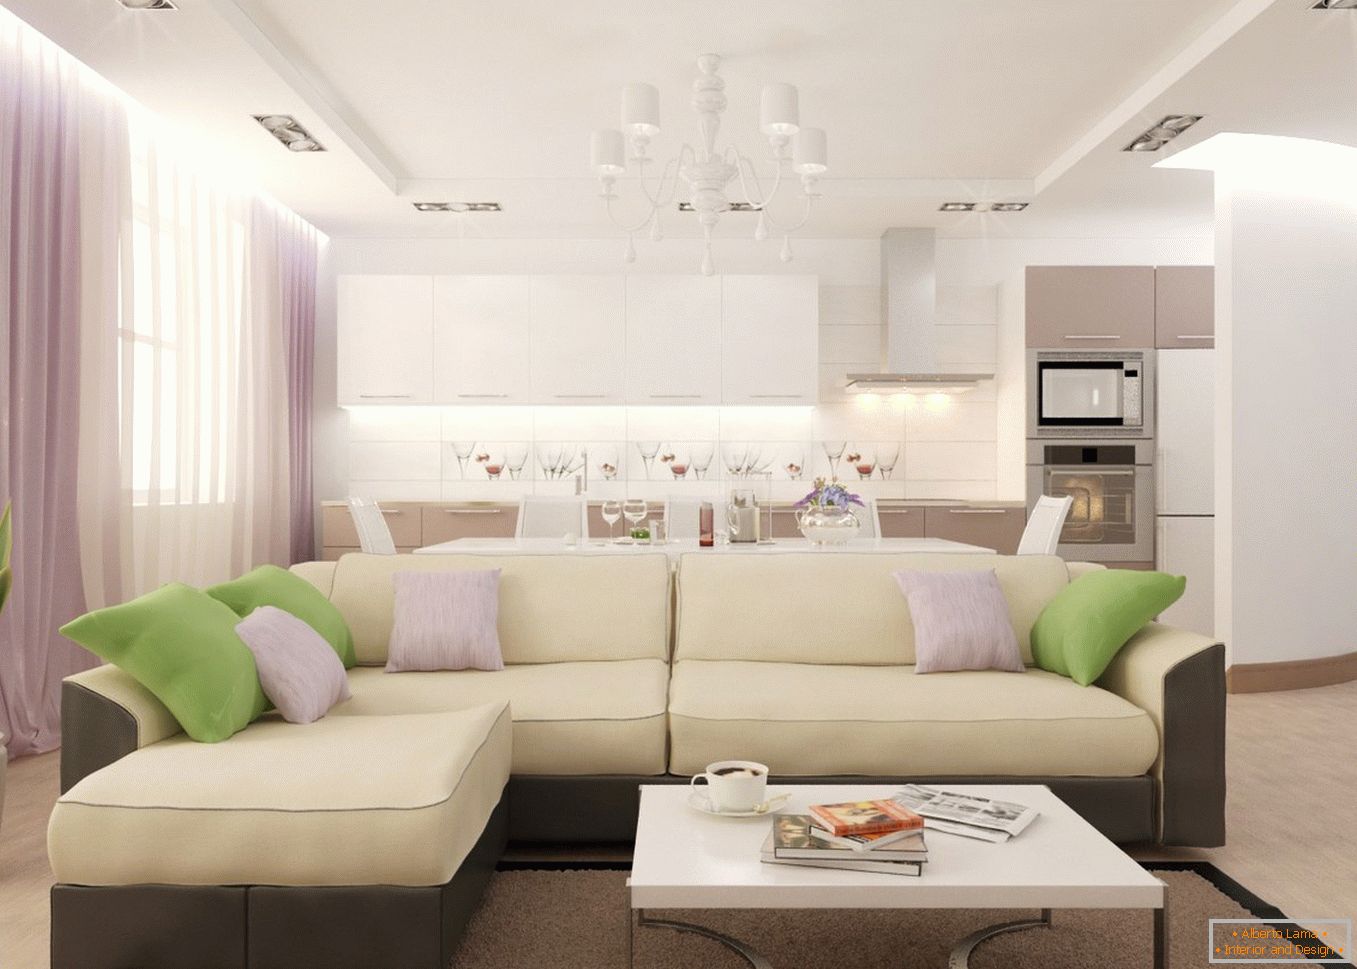 Un ampio divano nella cucina-soggiorno